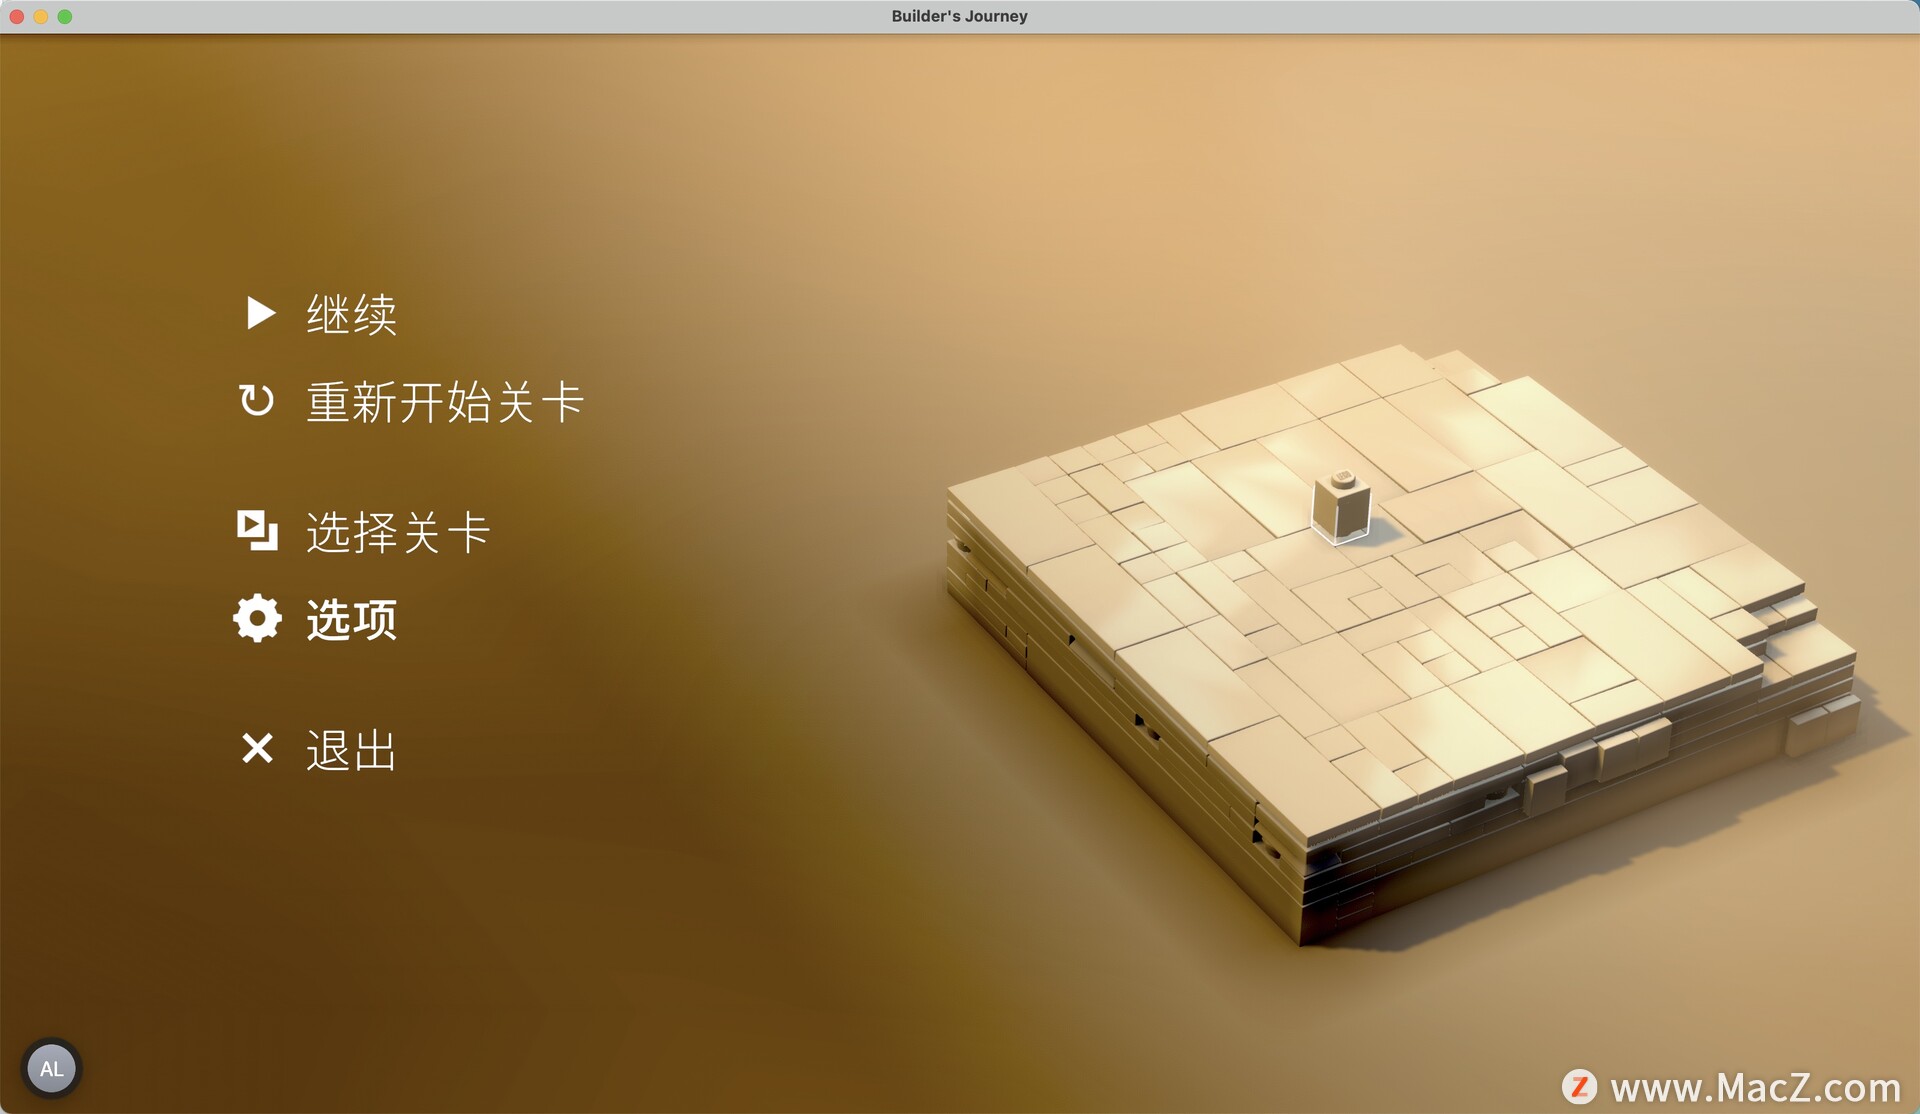 乐高建造者之旅LEGO Builder’s Journey Mac(休闲益智游戏)